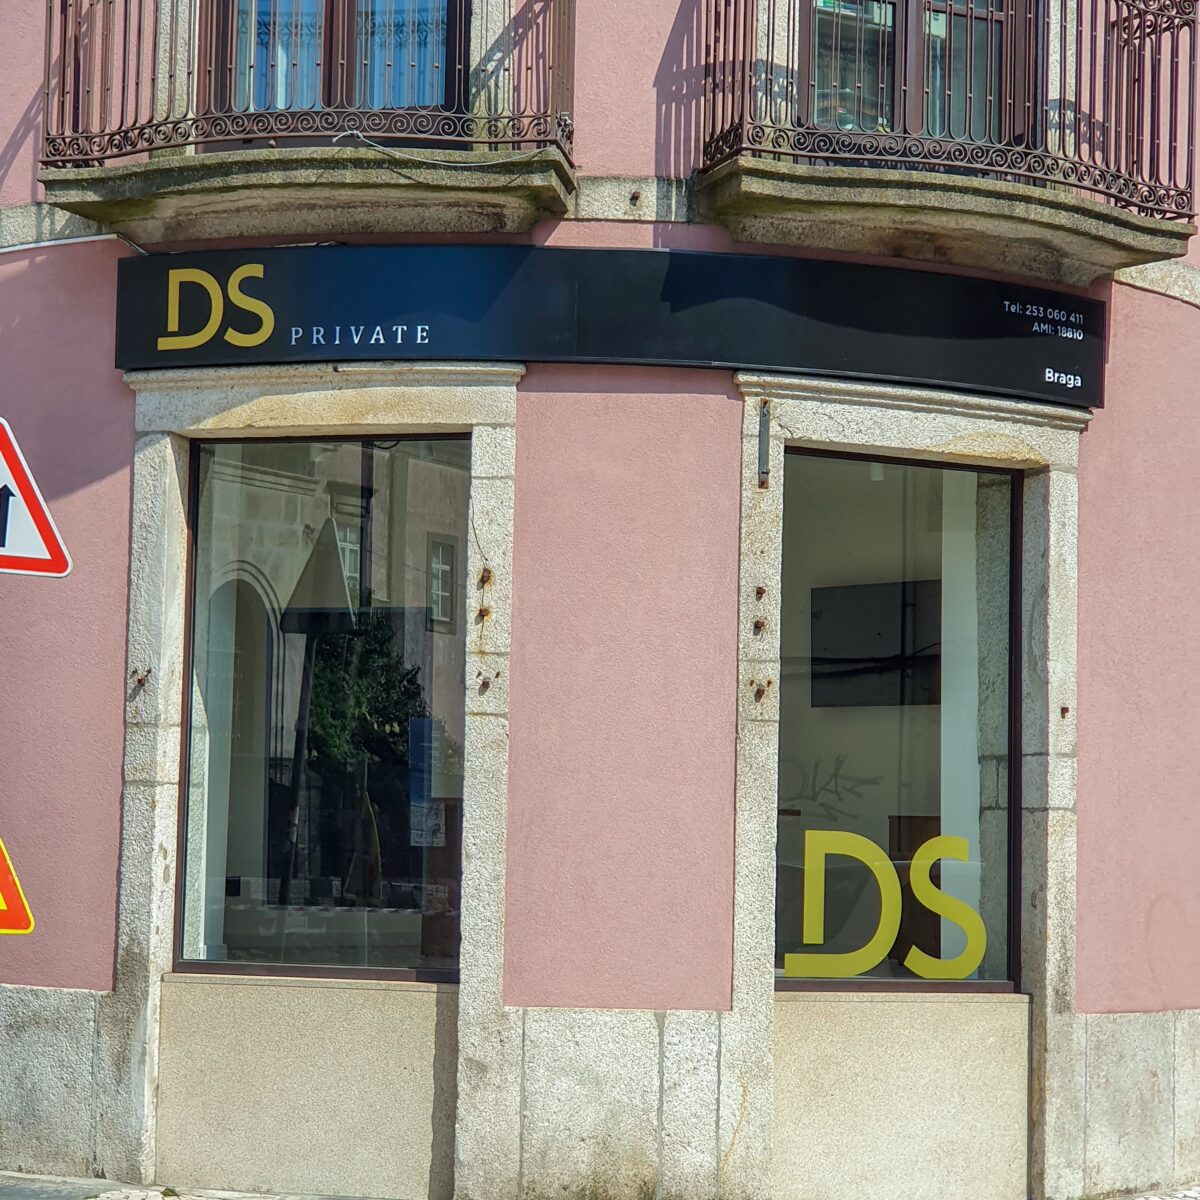 Tienda DS Private – Braga